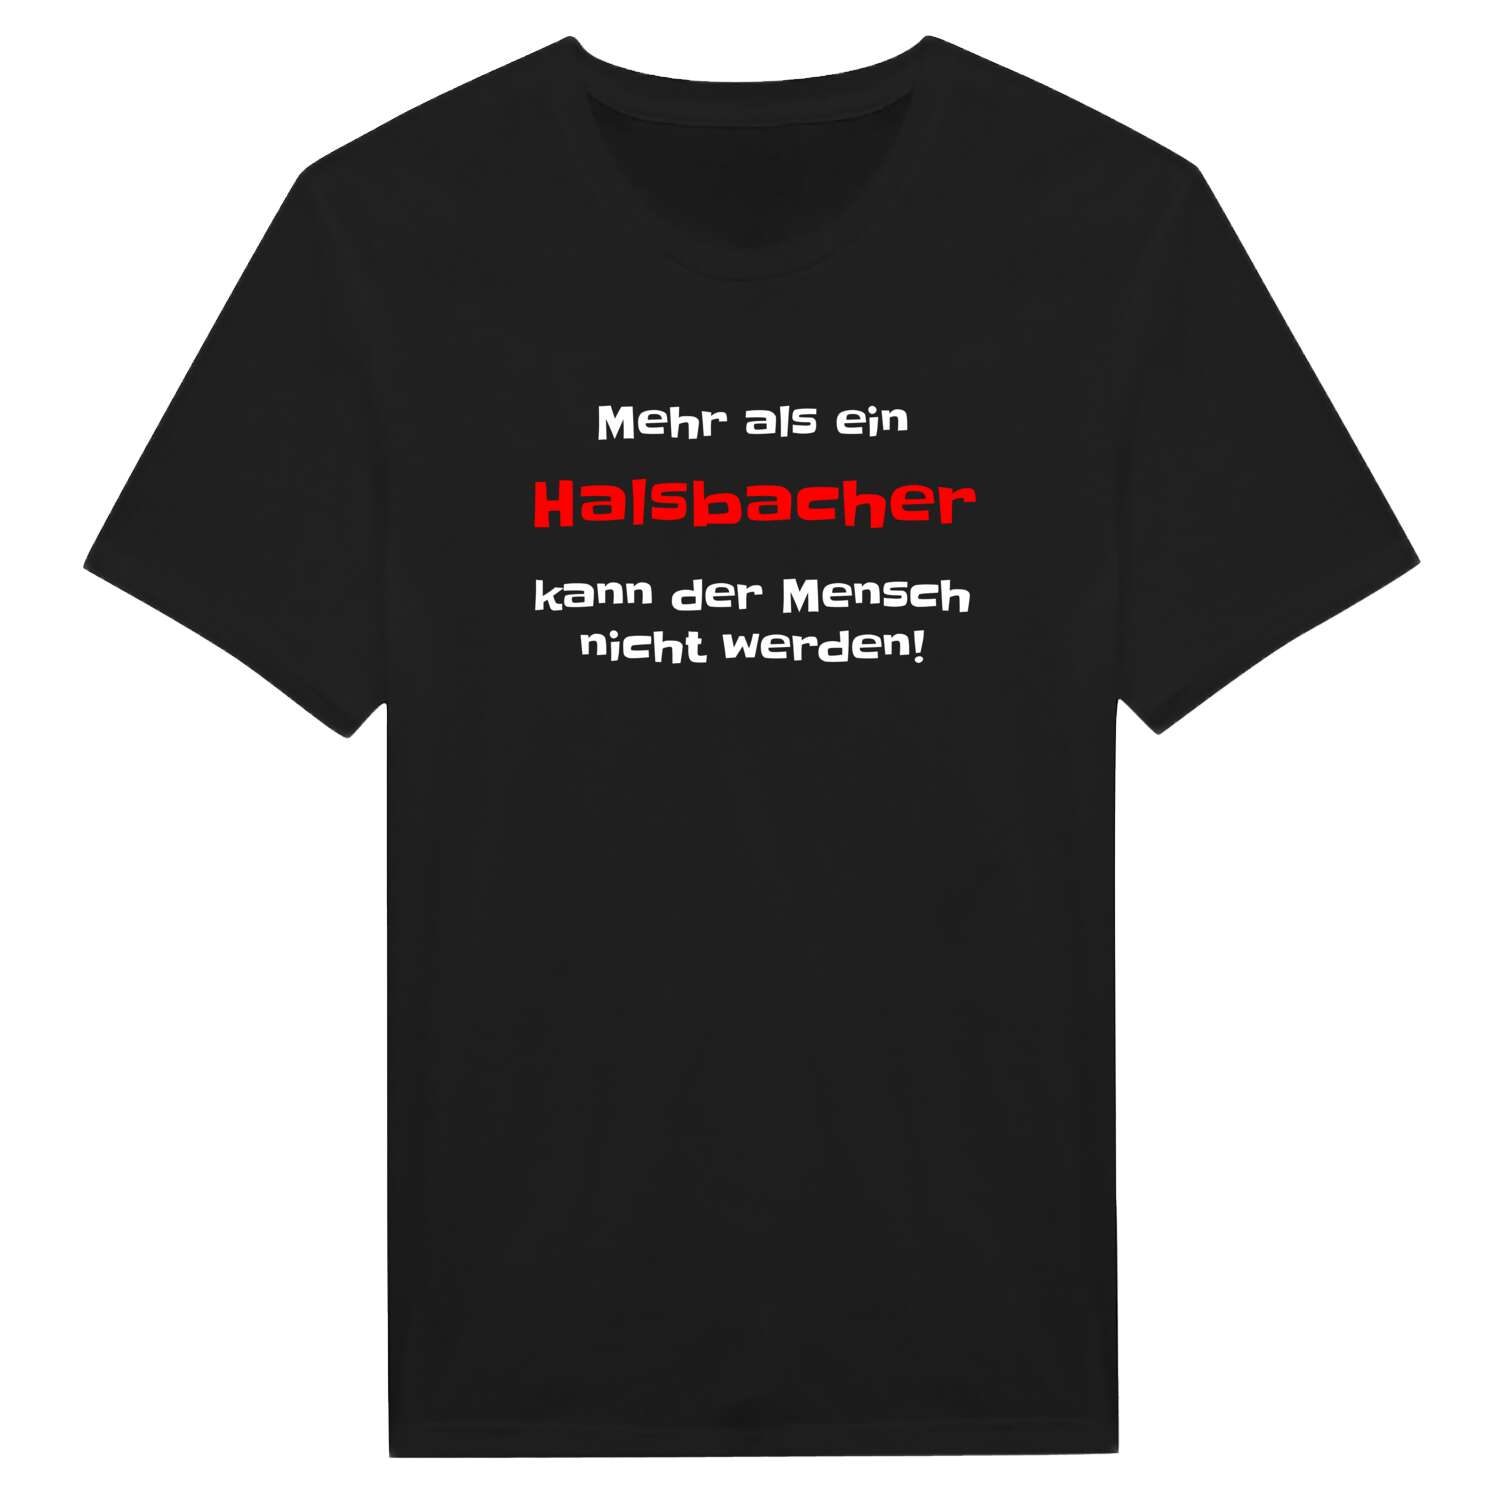 Halsbach T-Shirt »Mehr als ein«